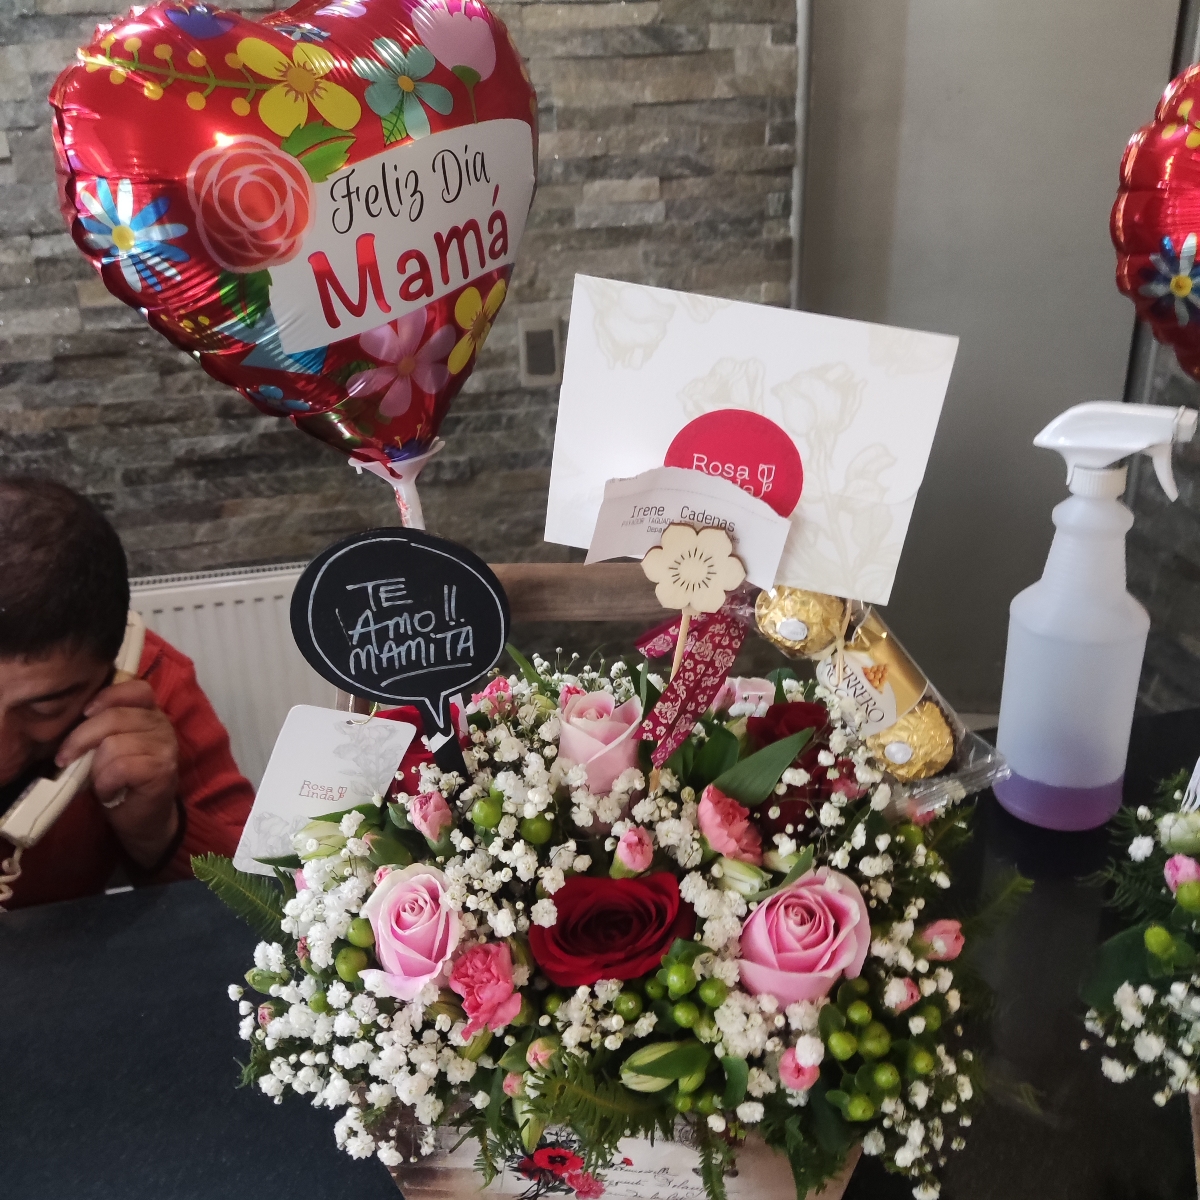 Canasto para mamá - Arreglo floral con rosas, miniclaveles, astromelias, chocolates, globo y pizarra - Pedido 255159